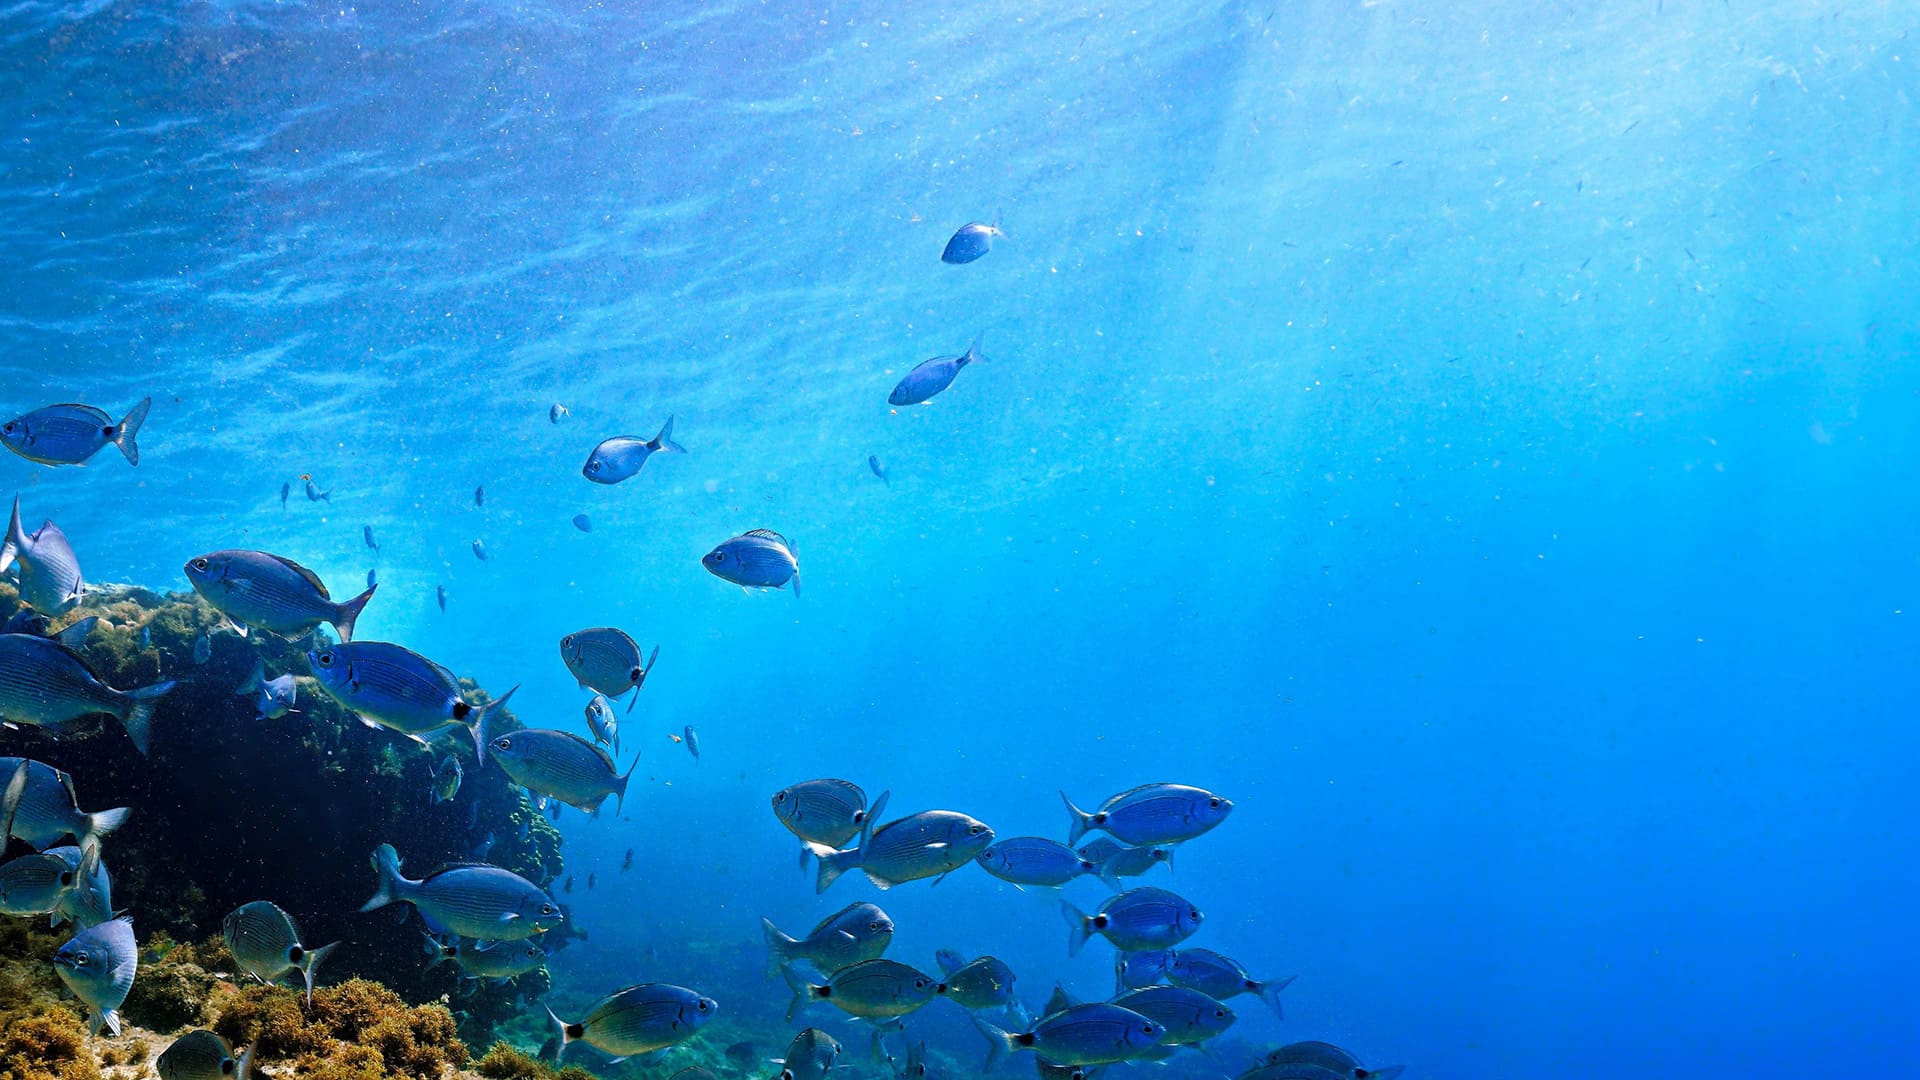 ”海洋生物による二酸化炭素低減の施策”のイメージ画像 / Image of ”Measures to reduce CO2 emissions by marine organisms”